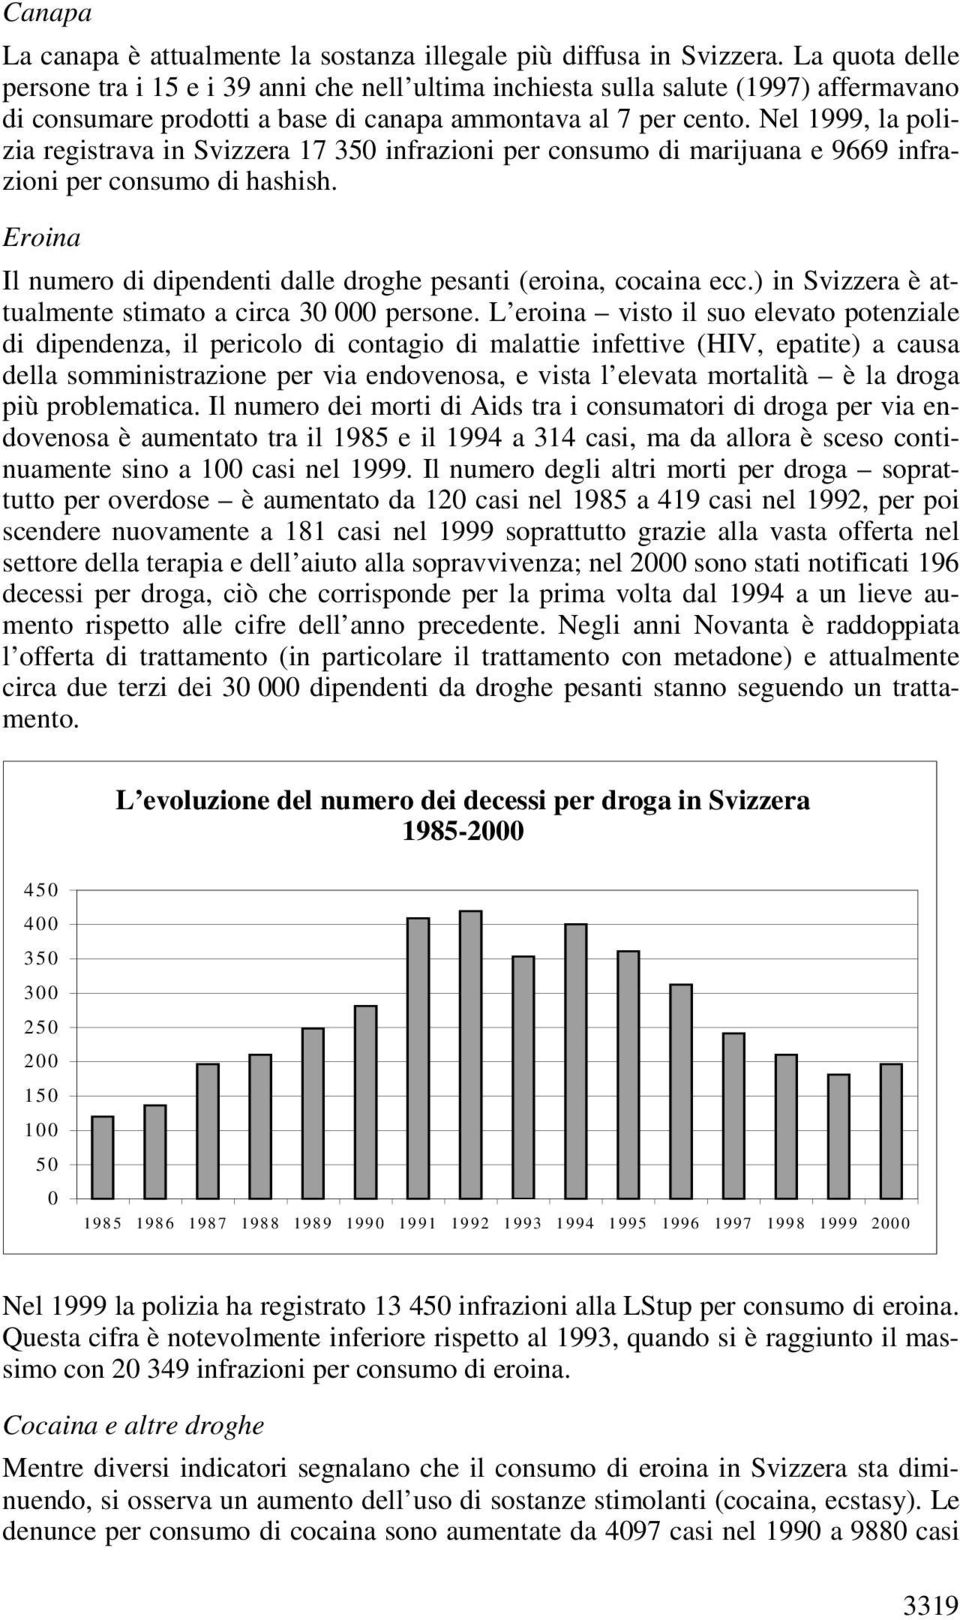 Nel 1999, la polizia registrava in Svizzera 17 350 infrazioni per consumo di marijuana e 9669 infrazioni per consumo di hashish.